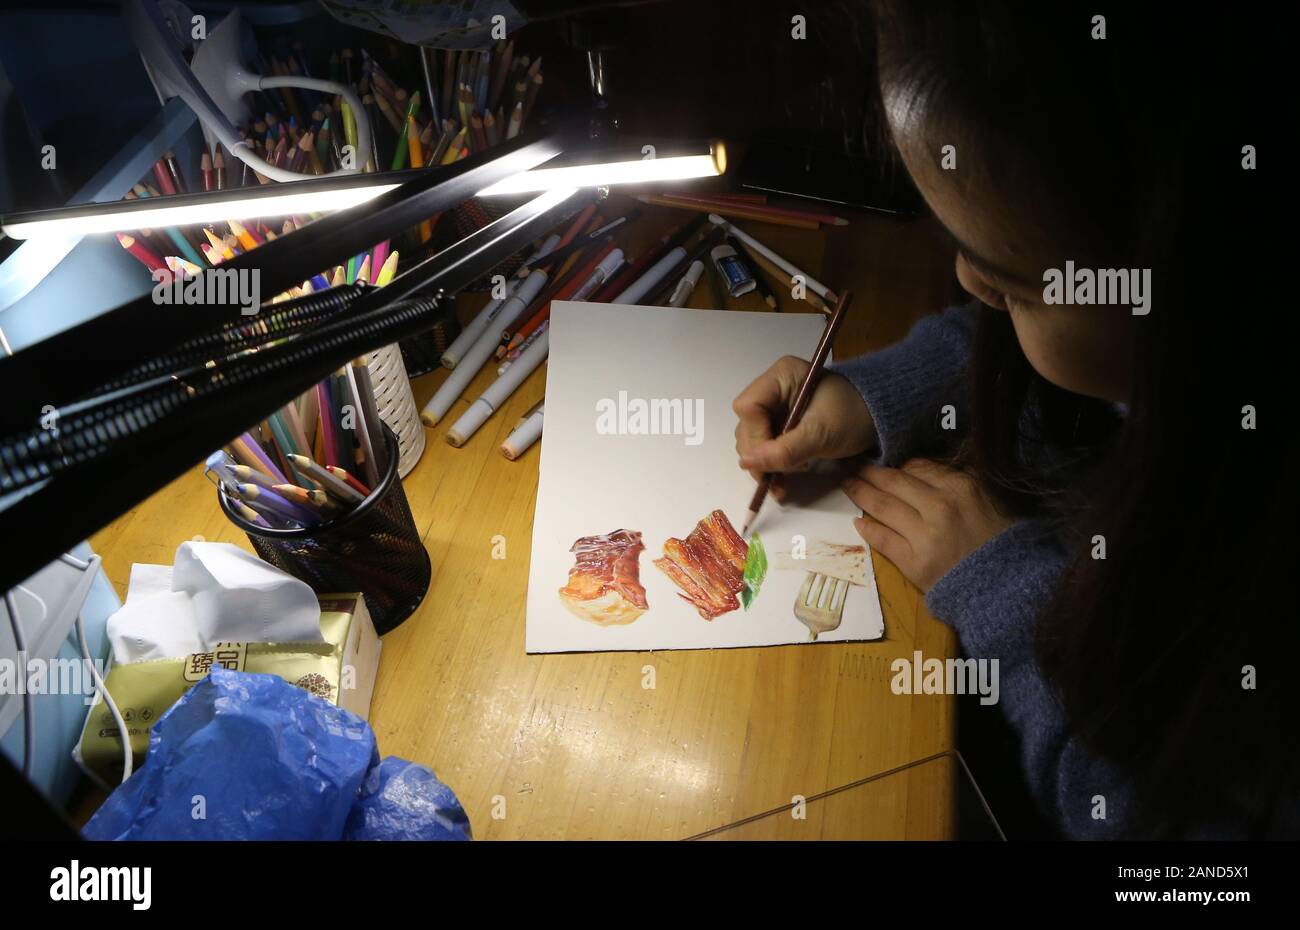 Chen dibuja Lanlan pinturas de alimentos en la ciudad de Chengdu, en el suroeste de la provincia de Sichuan (China), el 6 de diciembre de 2019. Chen Lanlan, un estudiante senior en importantes derechos Foto de stock